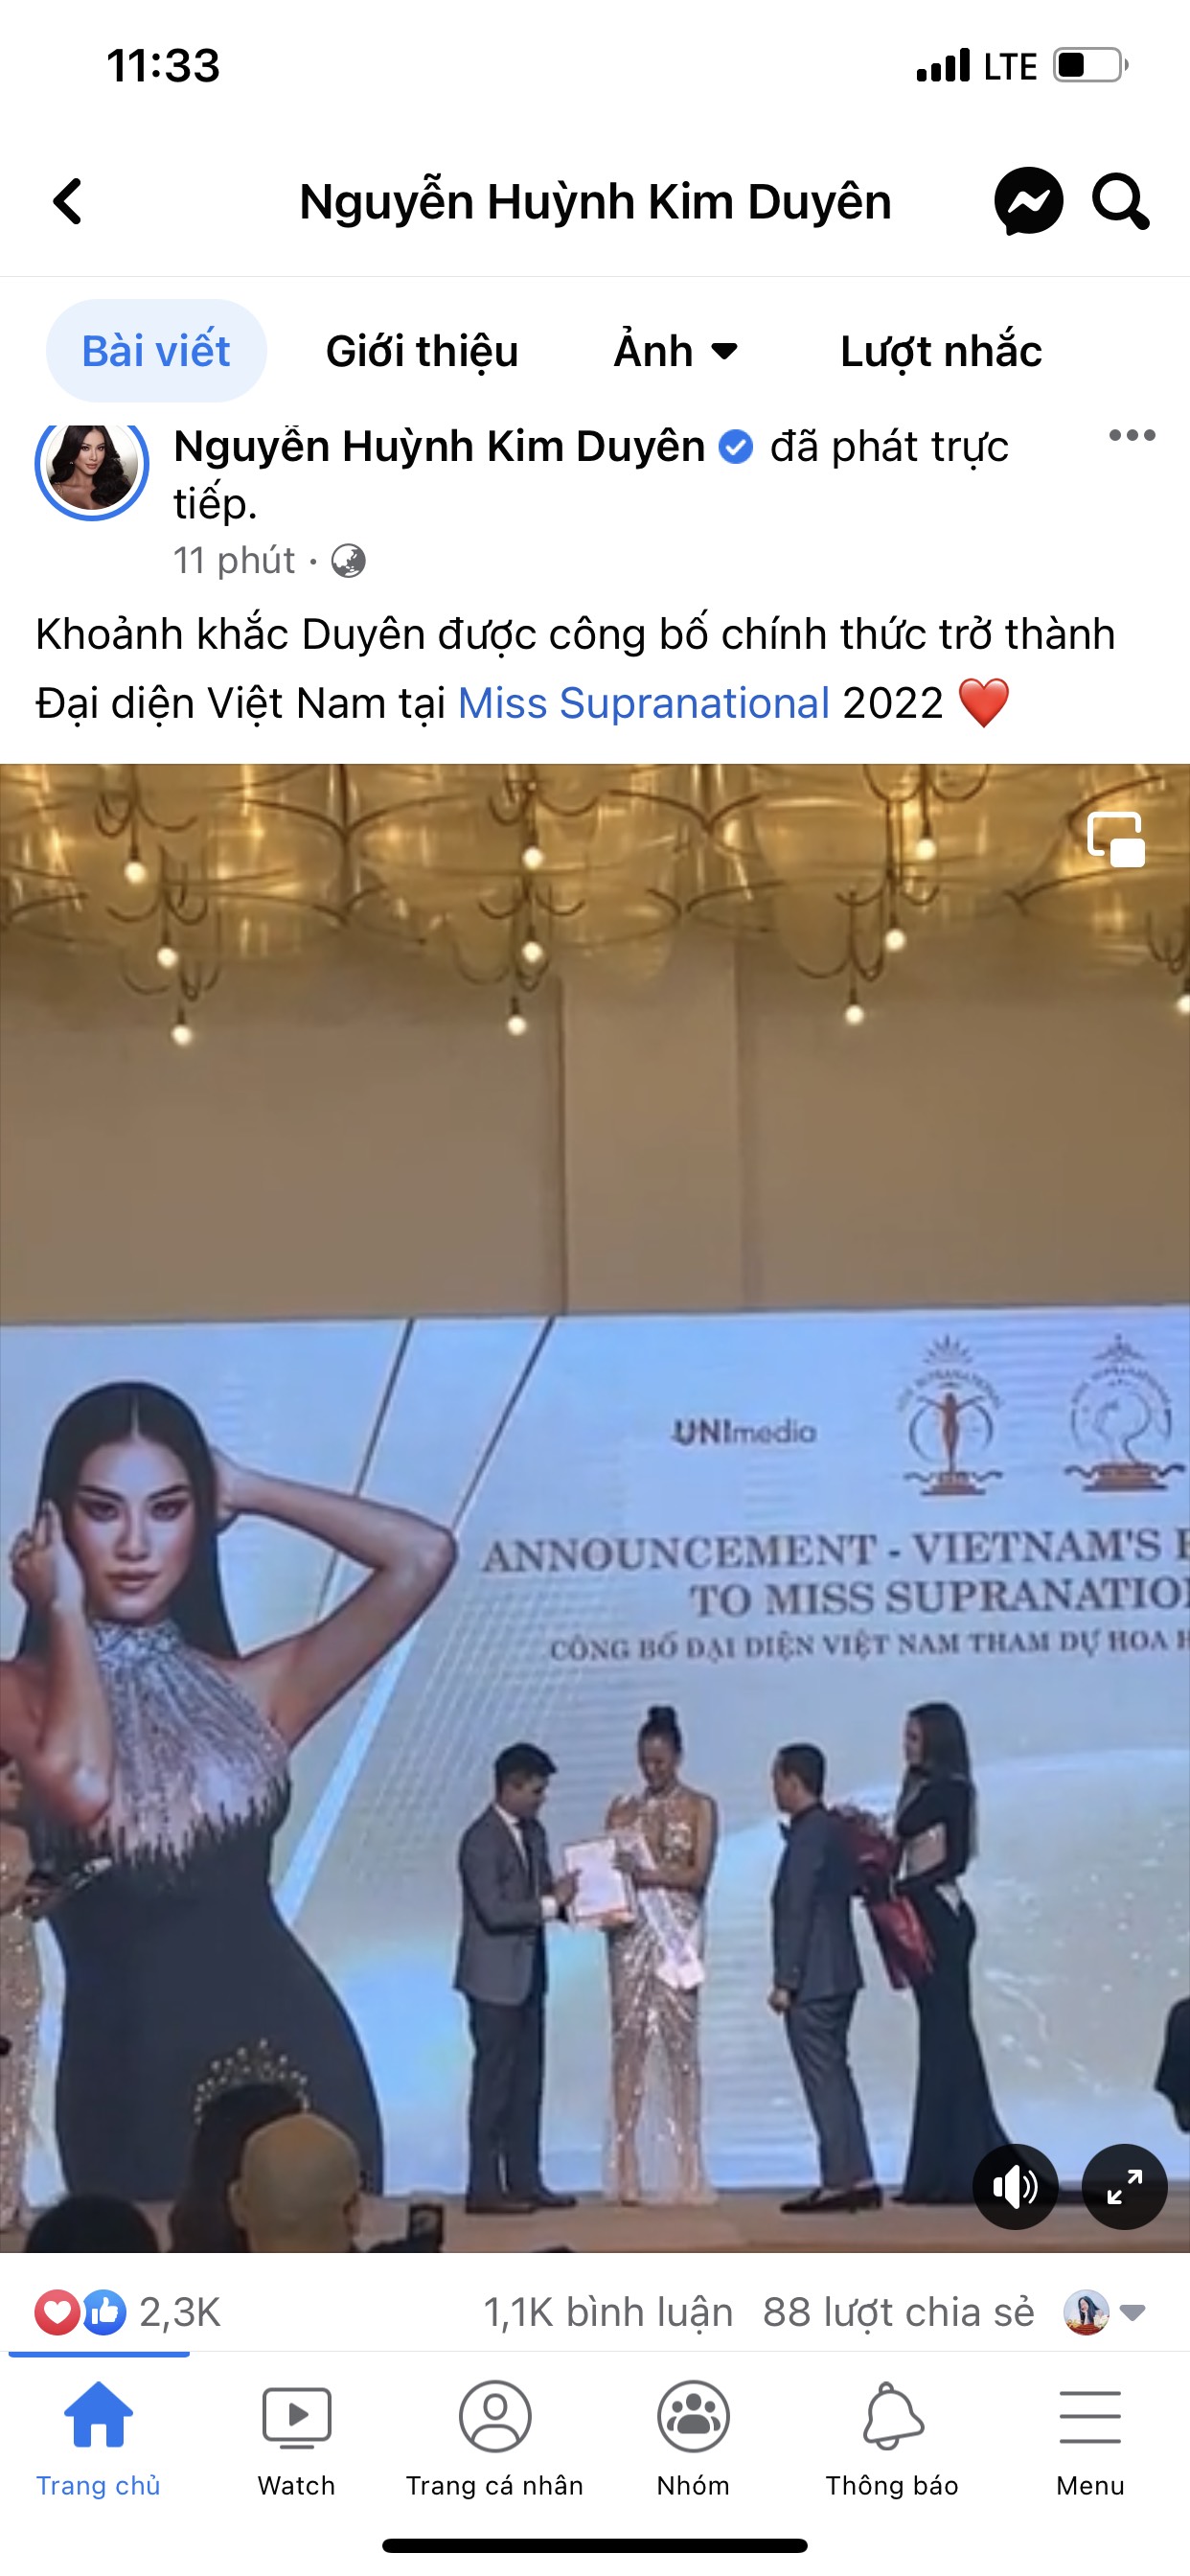 Thông tin cũng được đăng tải trên trang chủ của Á hậu 1 Hoa hậu Hoàn vũ Việt Nam 2019